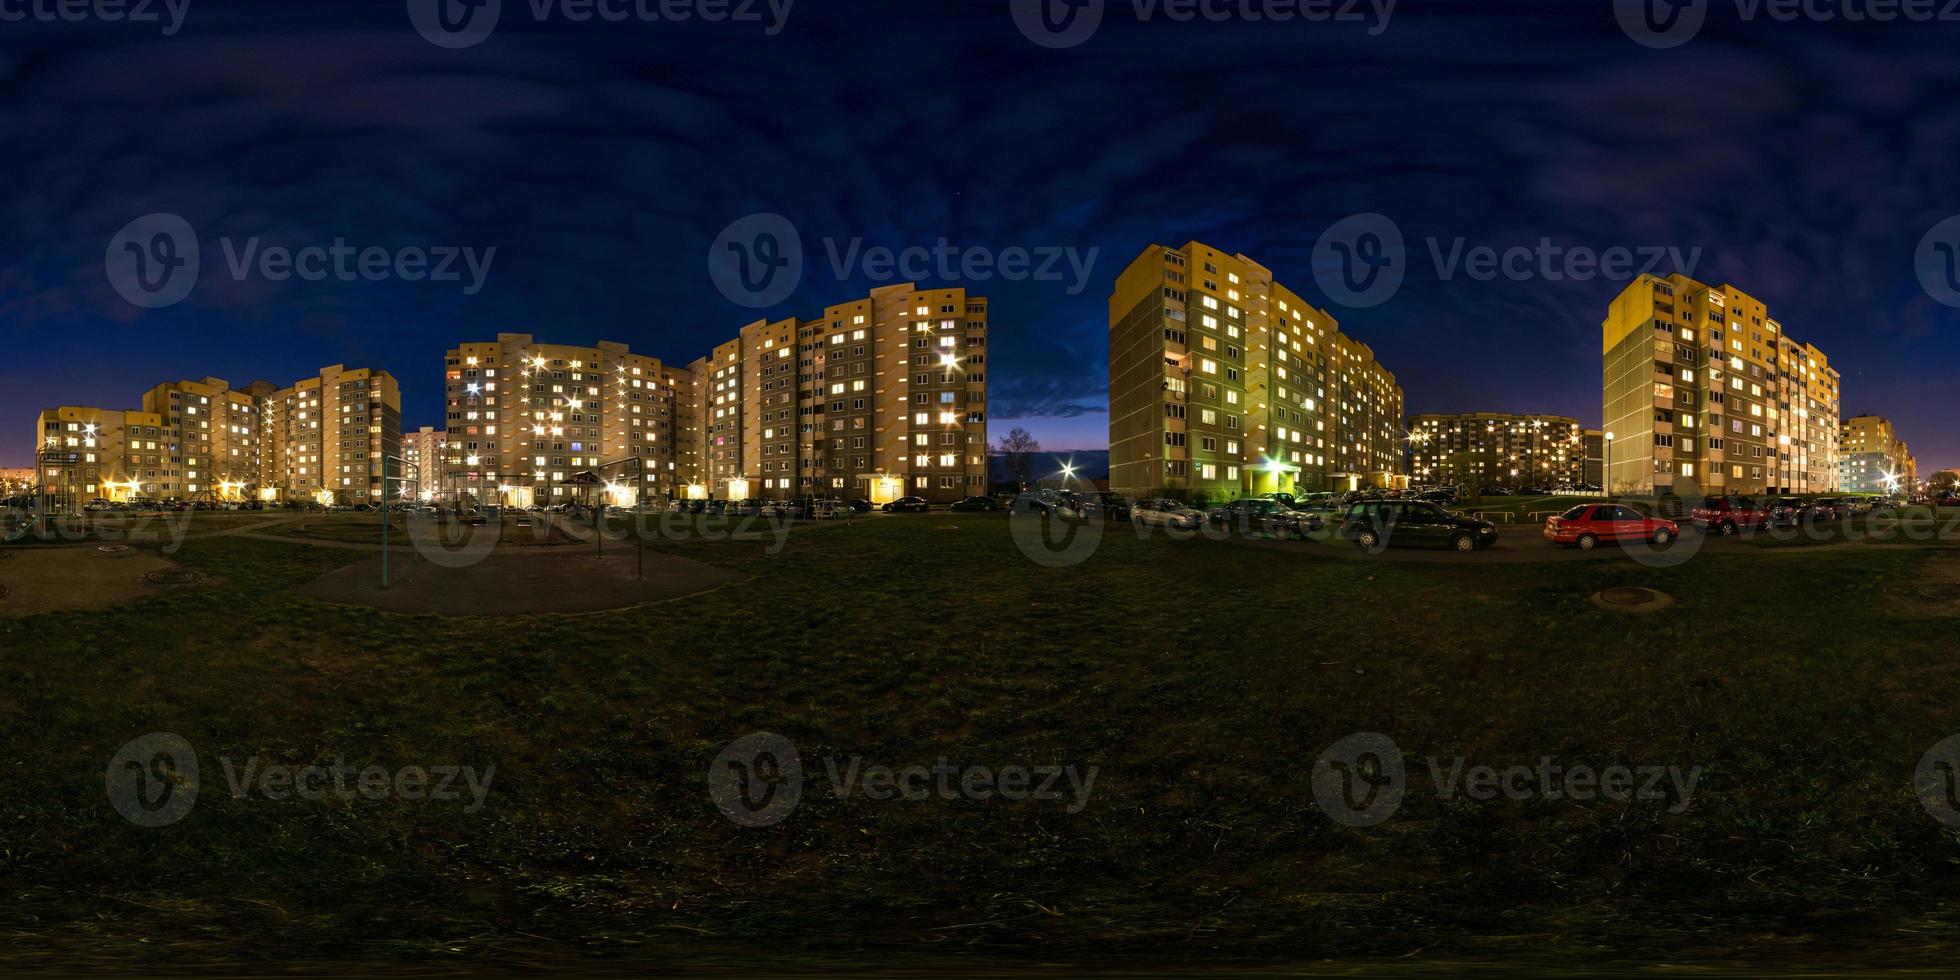 panorama noturno hdri esférico sem costura completo luz de visão de ângulo de 360 graus nas janelas da área de construção de vários andares do bairro residencial de desenvolvimento urbano em projeção equirretangular, conteúdo de vr foto